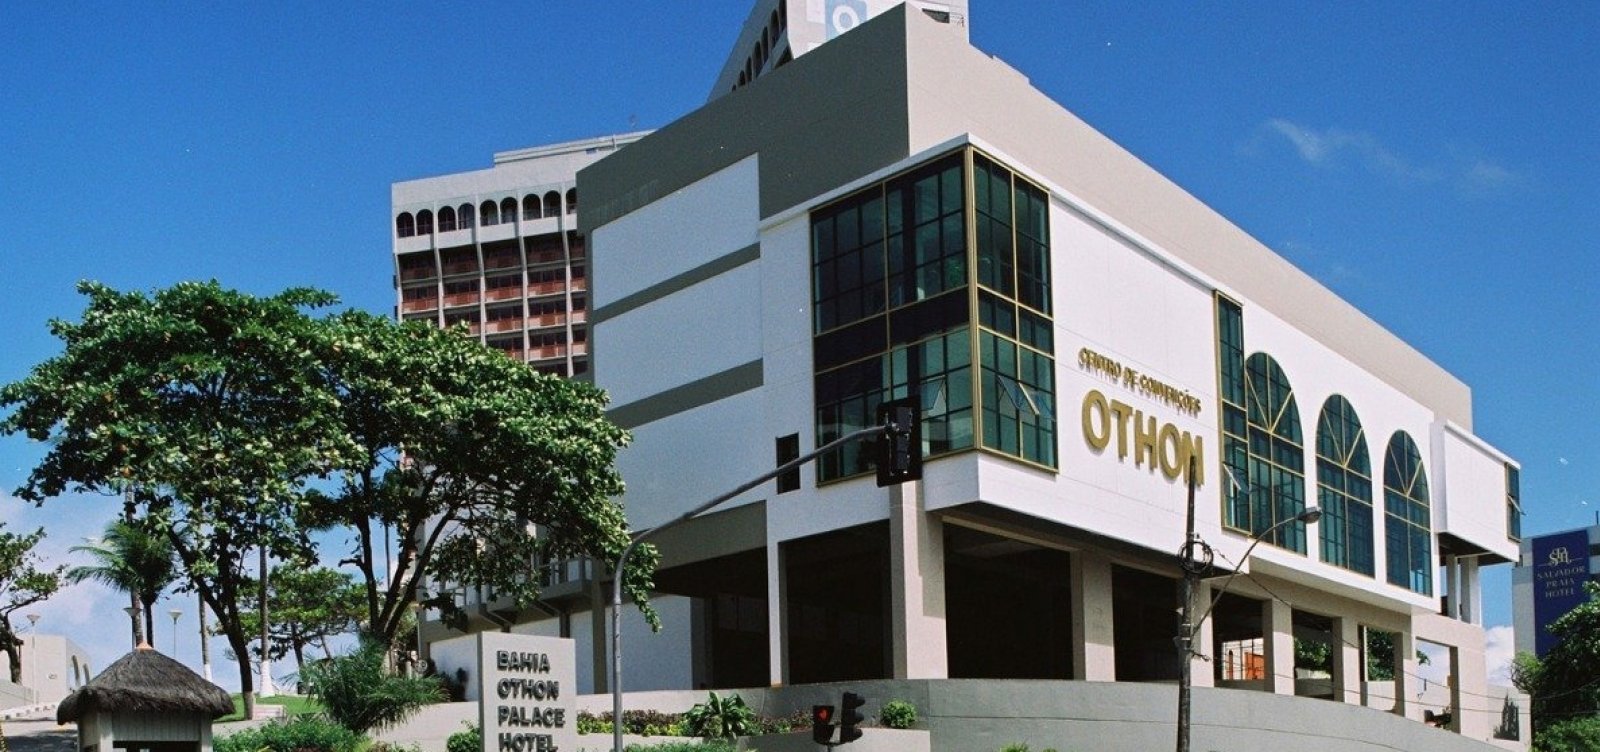 Justiça aceita pedido de recuperação dos hotéis Othon